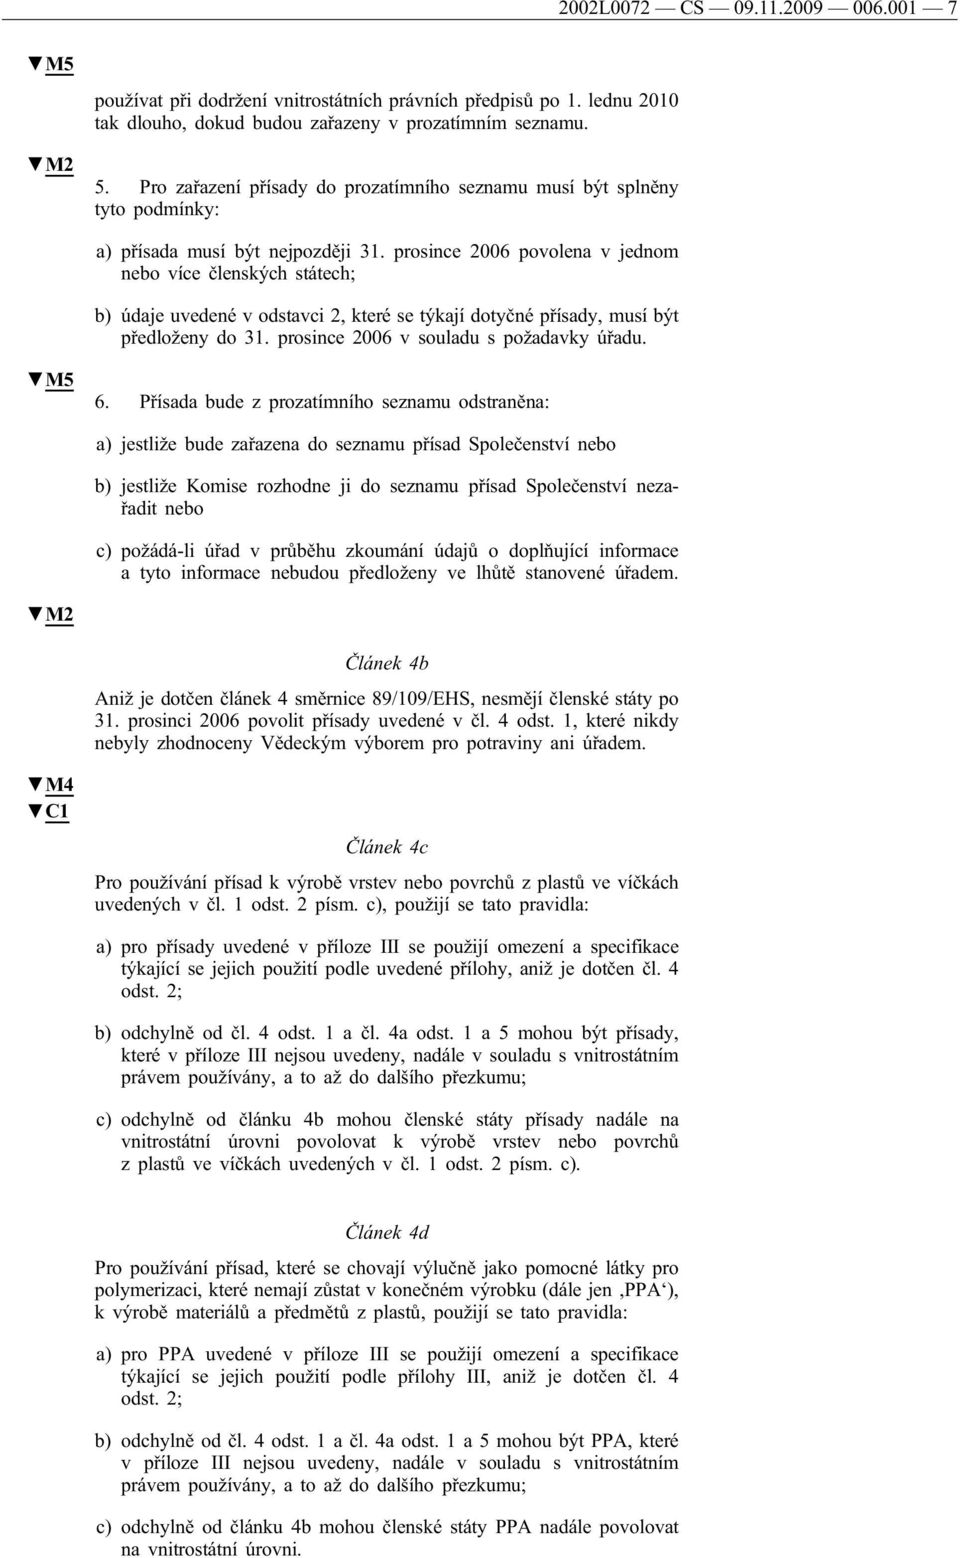 prosince 2006 povolena v jednom nebo více členských státech; b) údaje uvedené v odstavci 2, které se týkají dotyčné přísady, musí být předloženy do 31. prosince 2006 v souladu s požadavky úřadu. M5 6.